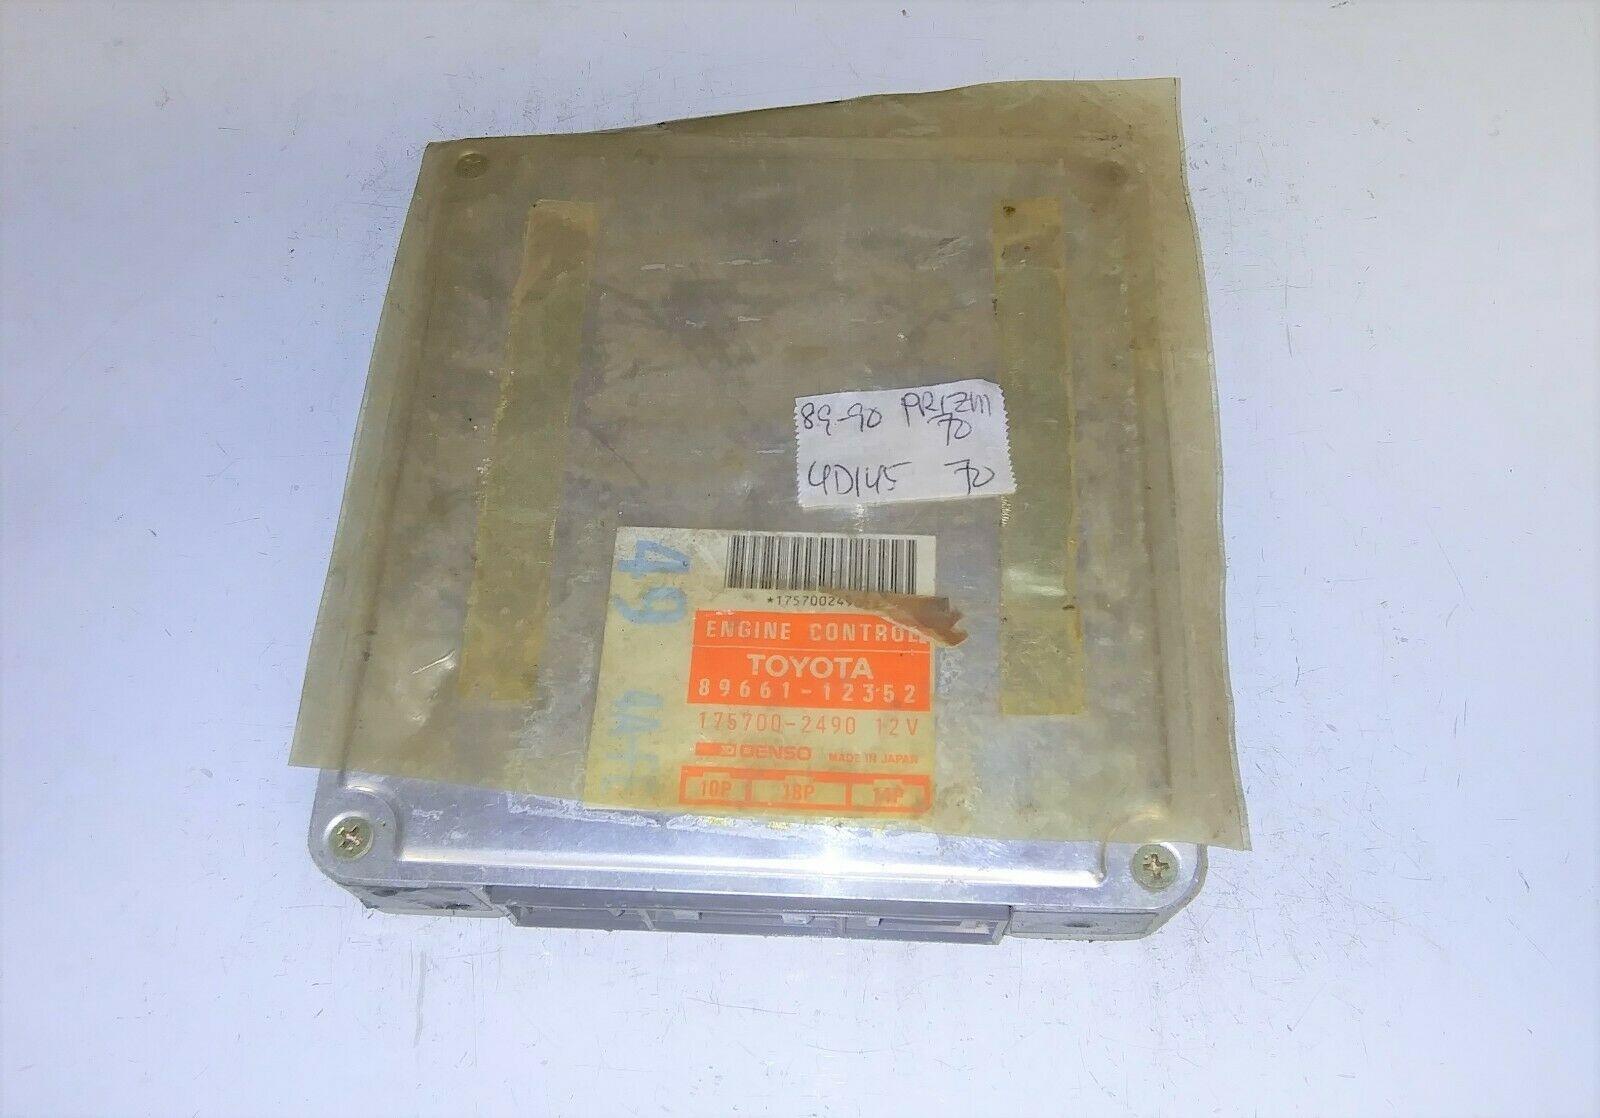 1989-1990 Geo Prizm ecm ecu computer 89661-12352.